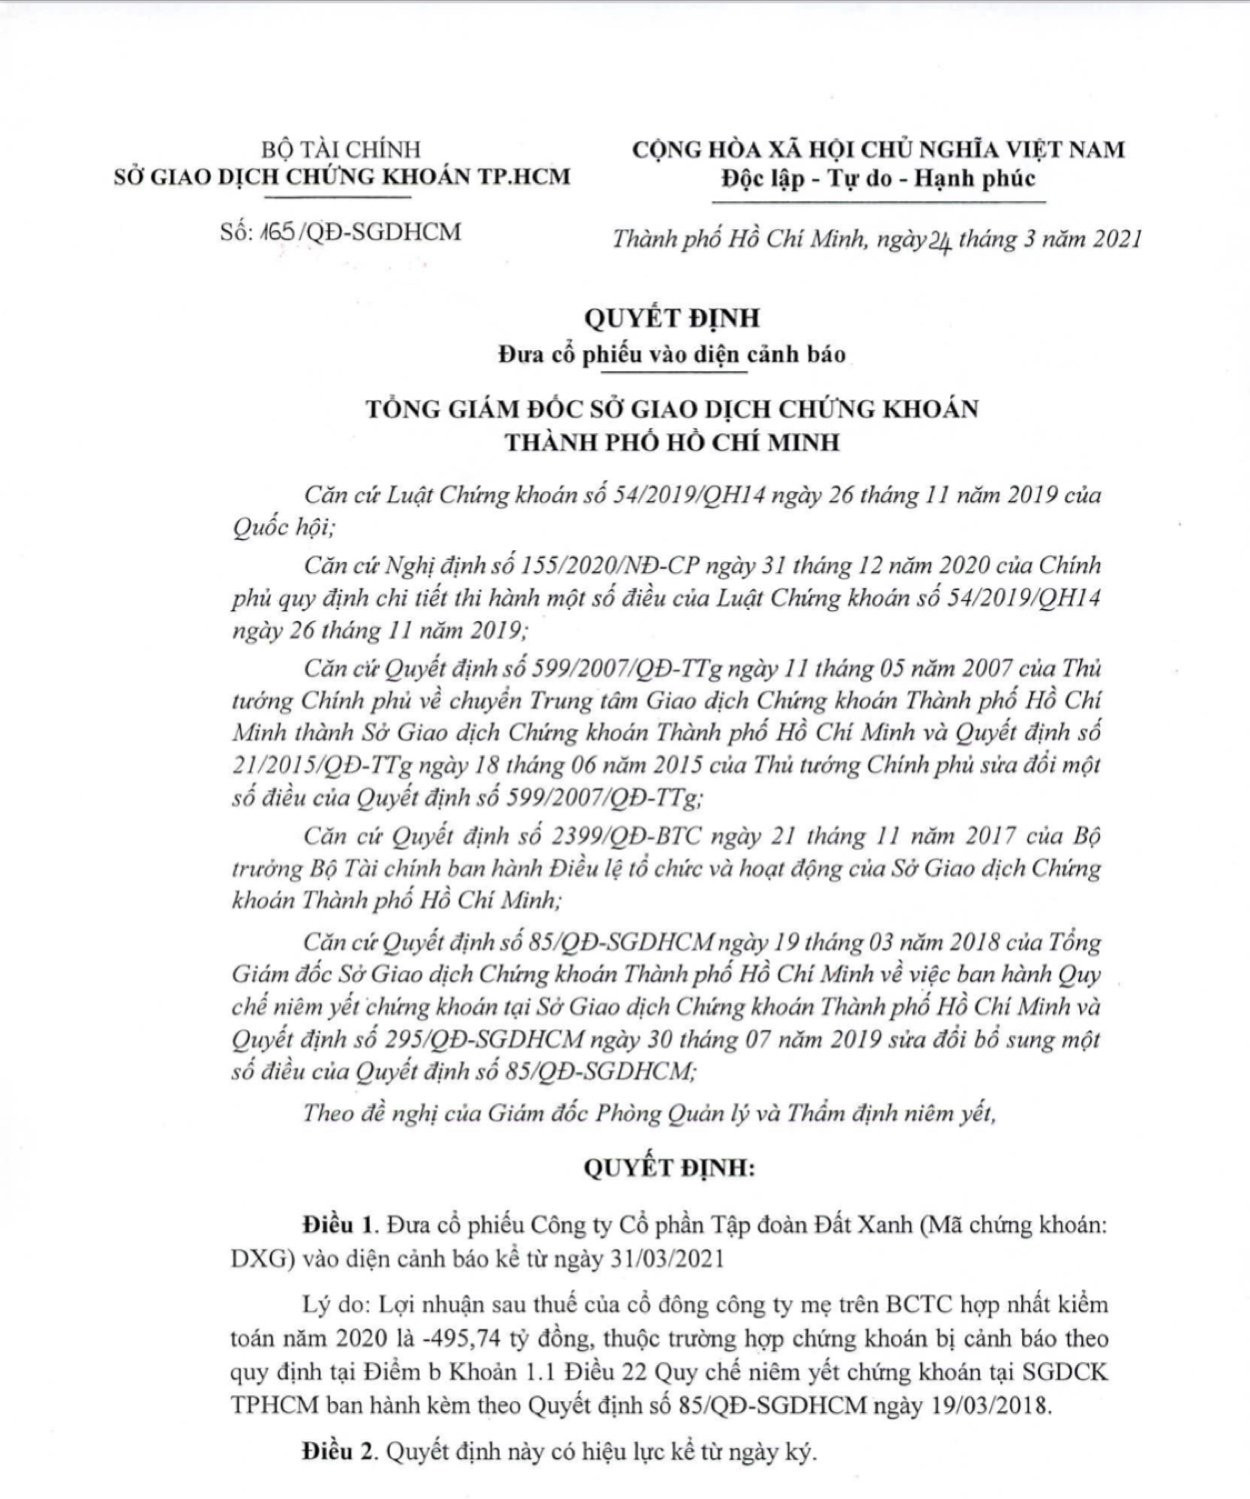 Quyết định số 165/QĐ-SGDHCM về việc đưa cổ phiếu DXG của Tập đoàn Đất Xanh vào diện cảnh báo được bà Trần Anh Đào, Phó Tổng giám đốc HOSE ký.